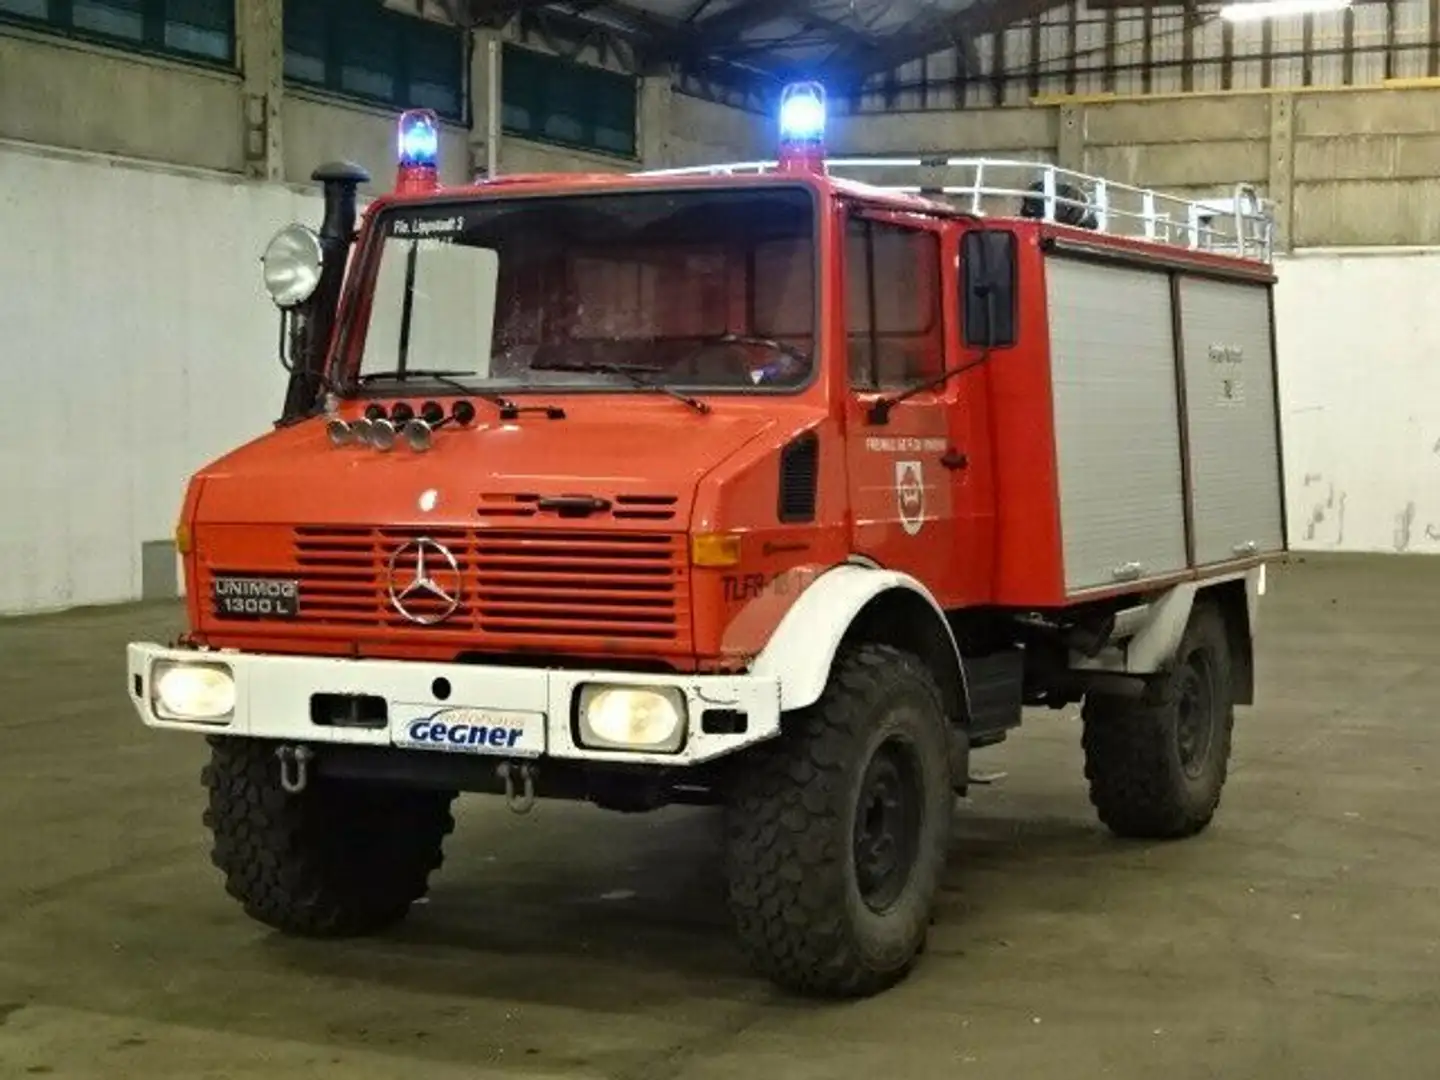 Unimog U1300L Feuerwehr Gerätewagen Red - 2